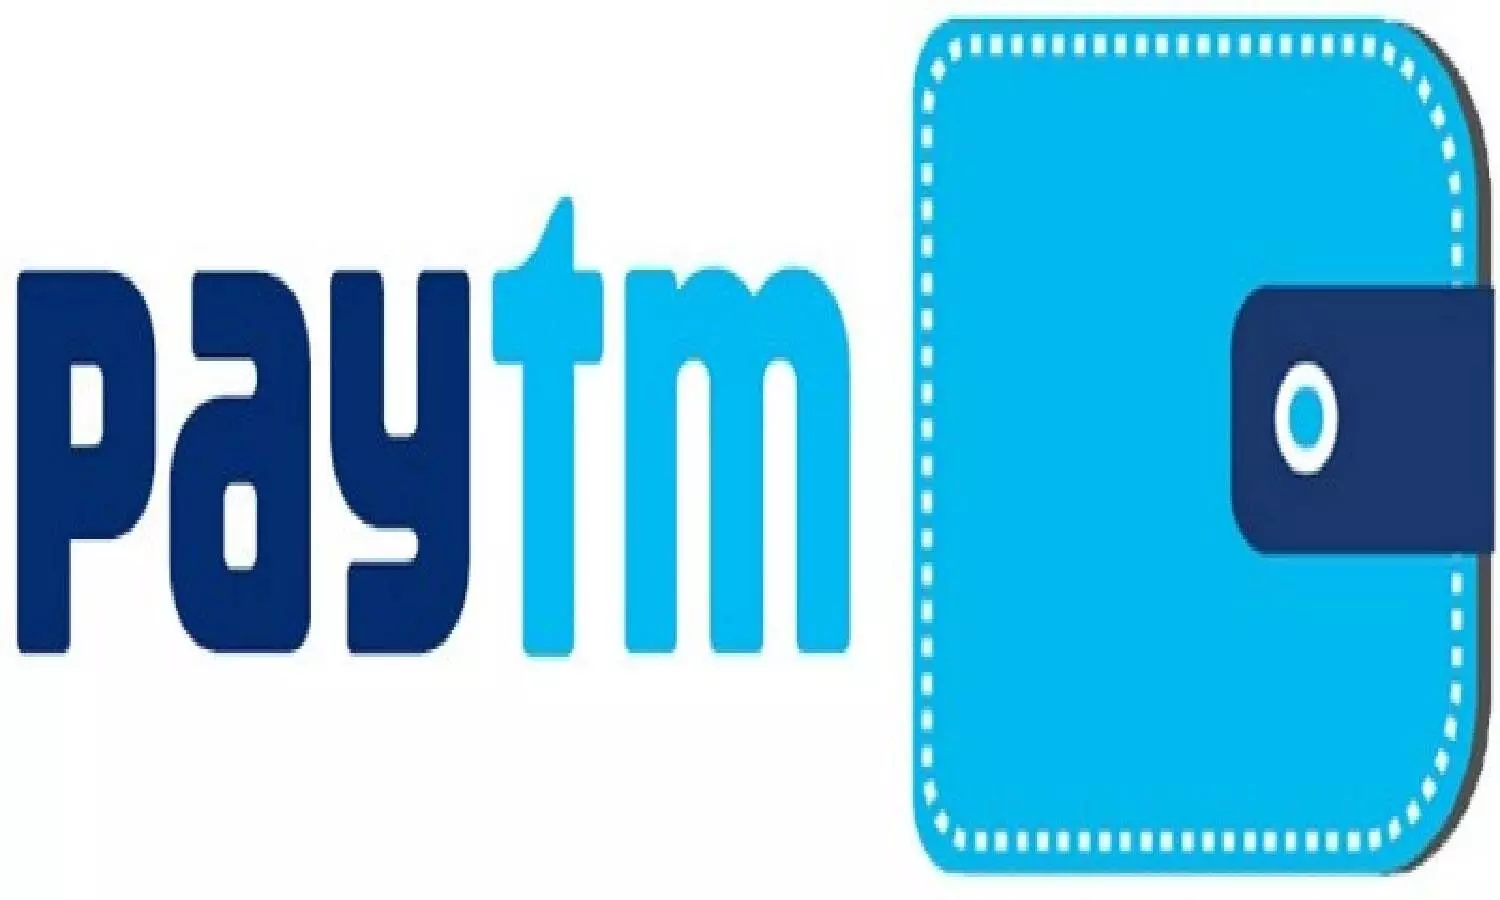 Billing promotions. Paytm Bank logo. Paytm PNG. Paytm logo PNG. Wallet connect logo.